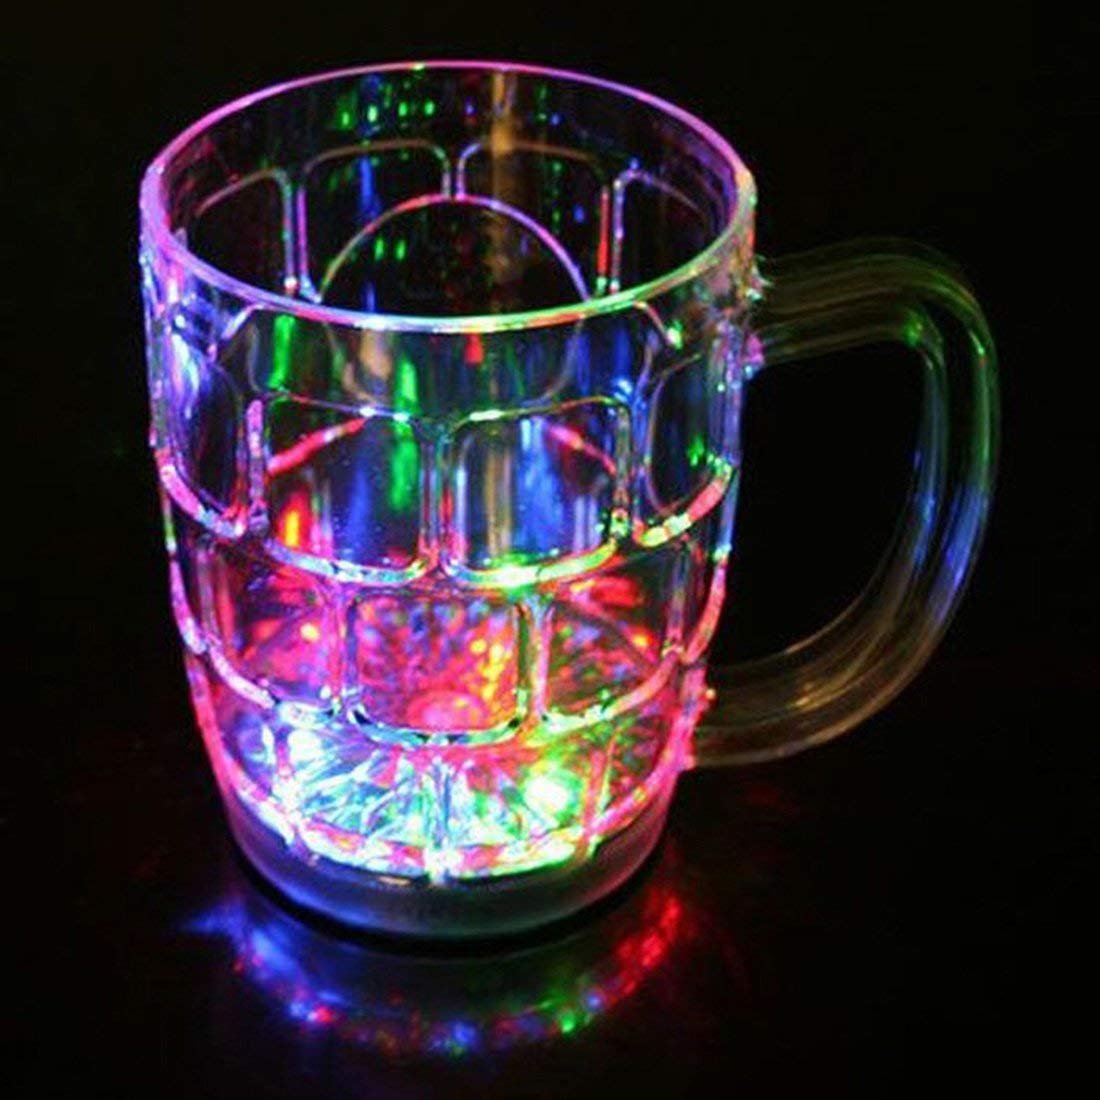 liquid activated Rainbow lighting mug on black background